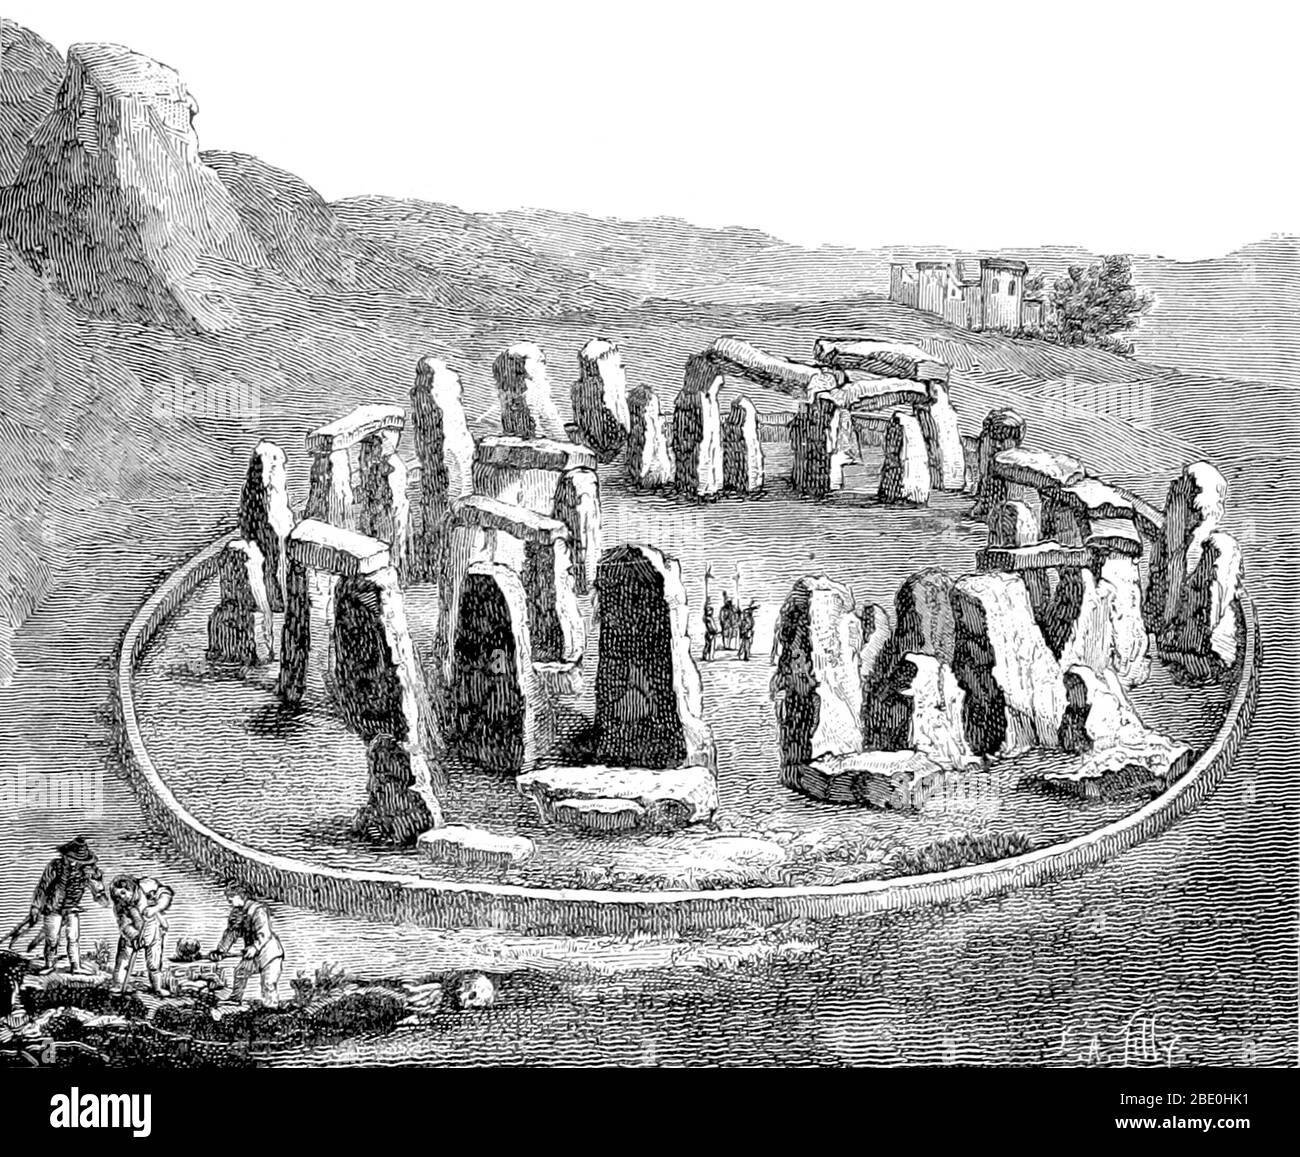 Stonehenge est un monument préhistorique situé dans le Wiltshire, en Angleterre. Stonehenge est l'un des sites les plus célèbres au monde, les vestiges d'un anneau de pierres debout mis dans les travaux de terrassement. Il est au milieu du complexe le plus dense des monuments néolithiques et de l'âge du bronze en Angleterre, y compris plusieurs centaines de monticules funéraires. Des preuves archéologiques indiquent que Stonehenge aurait pu être un lieu de sépulture dès ses débuts. Le site et ses environs ont été ajoutés à la liste des sites du patrimoine mondial de l'UNESCO en 1986. Image tirée de la page 521 de 'la création de l'homme et les premiers ministres âges de Banque D'Images